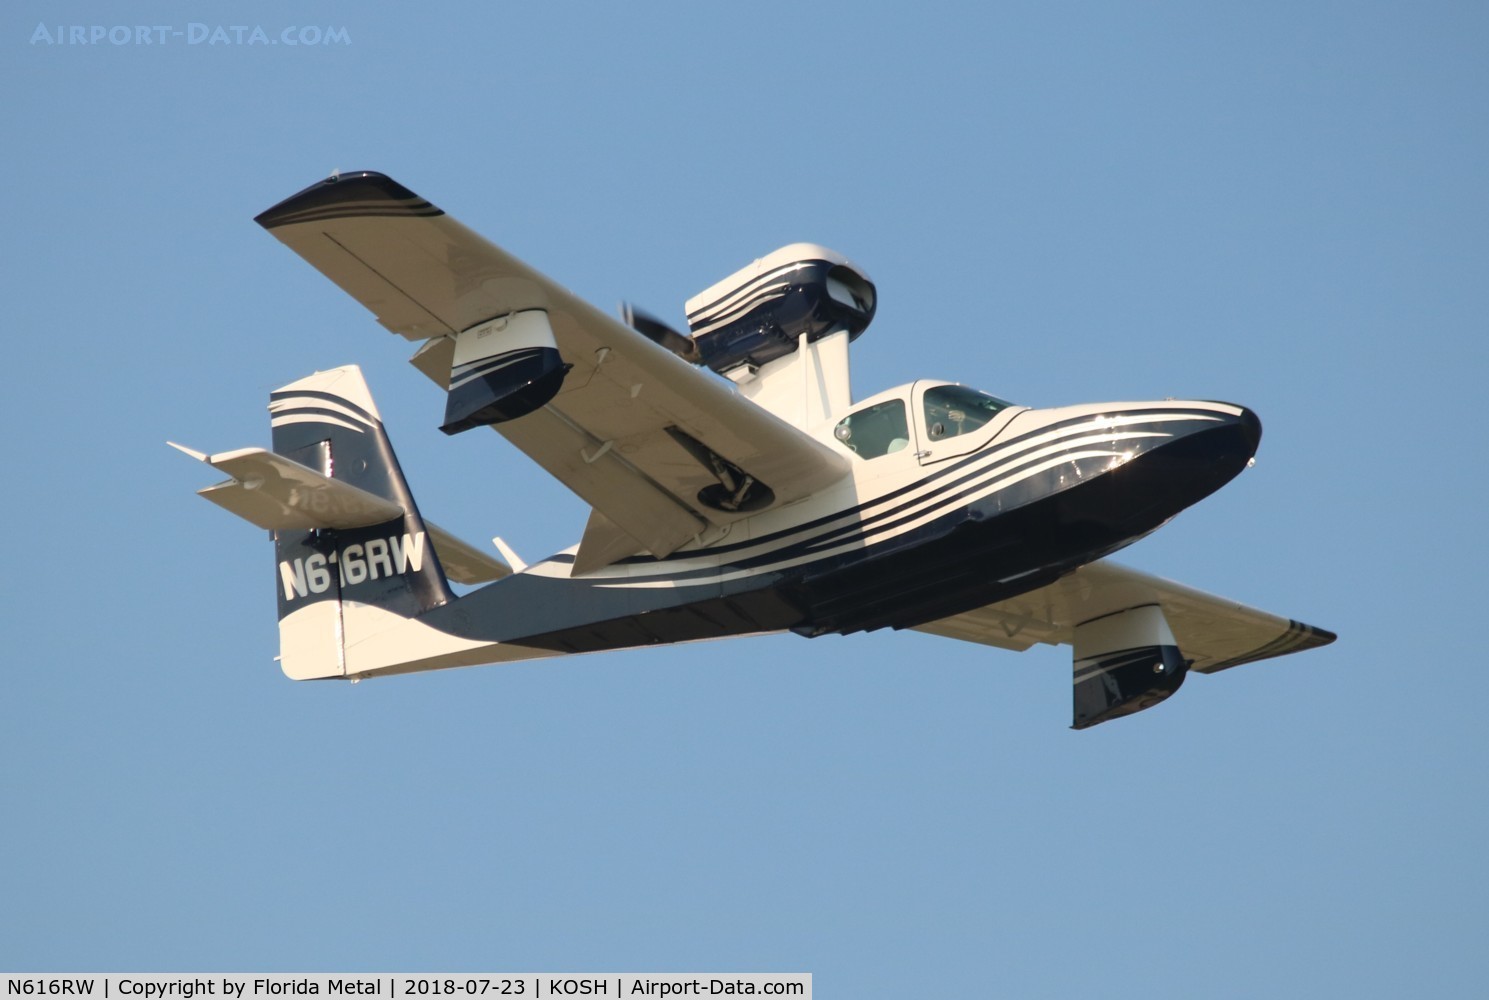 N616RW, 1978 Consolidated Aeronautics Inc. Lake LA-4-200 C/N 888, LA-4 zx